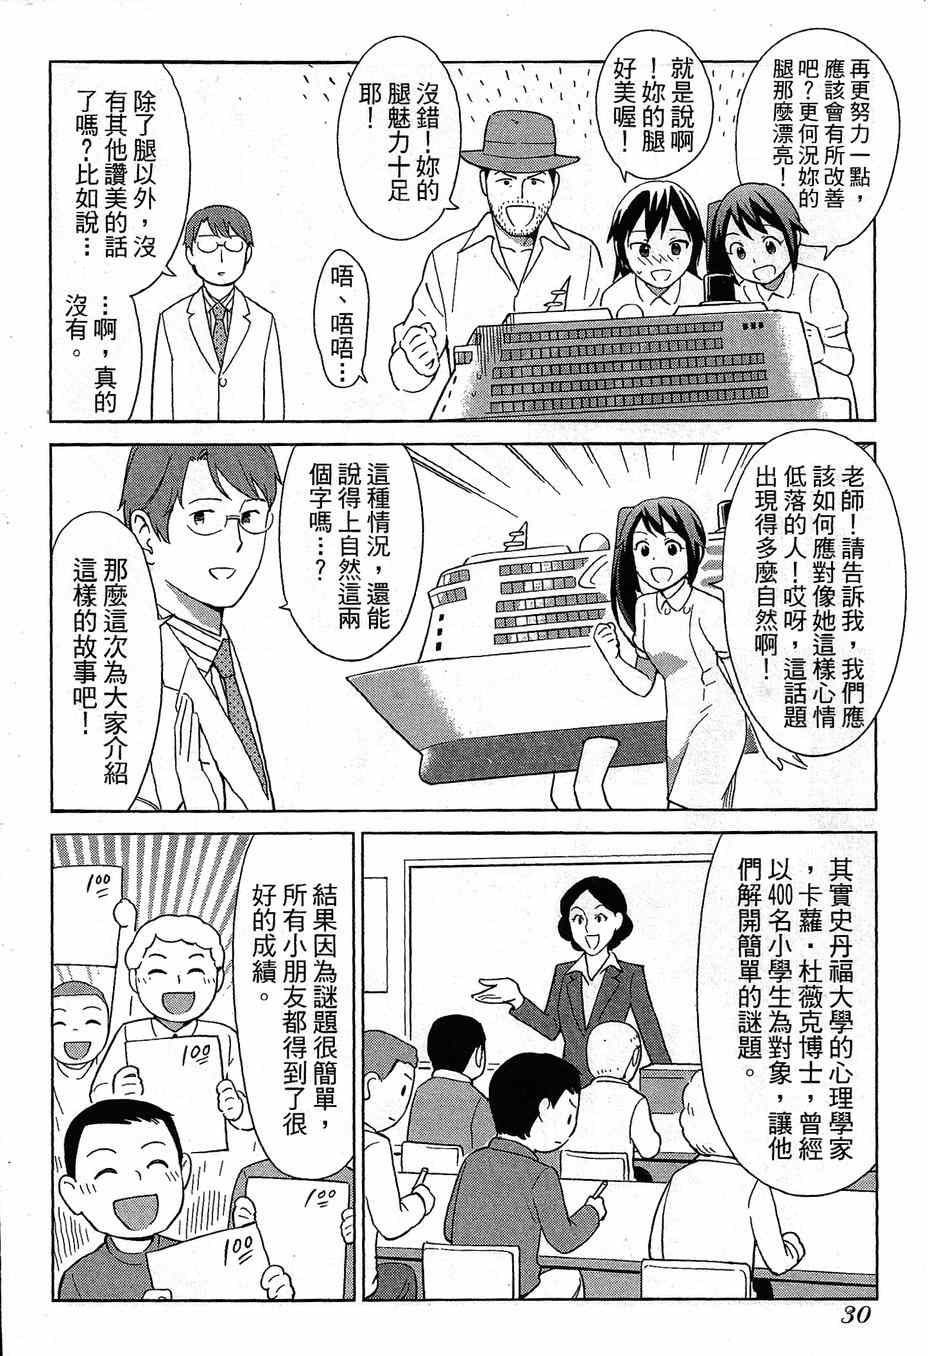 《漫画心疗系》漫画 064-065话